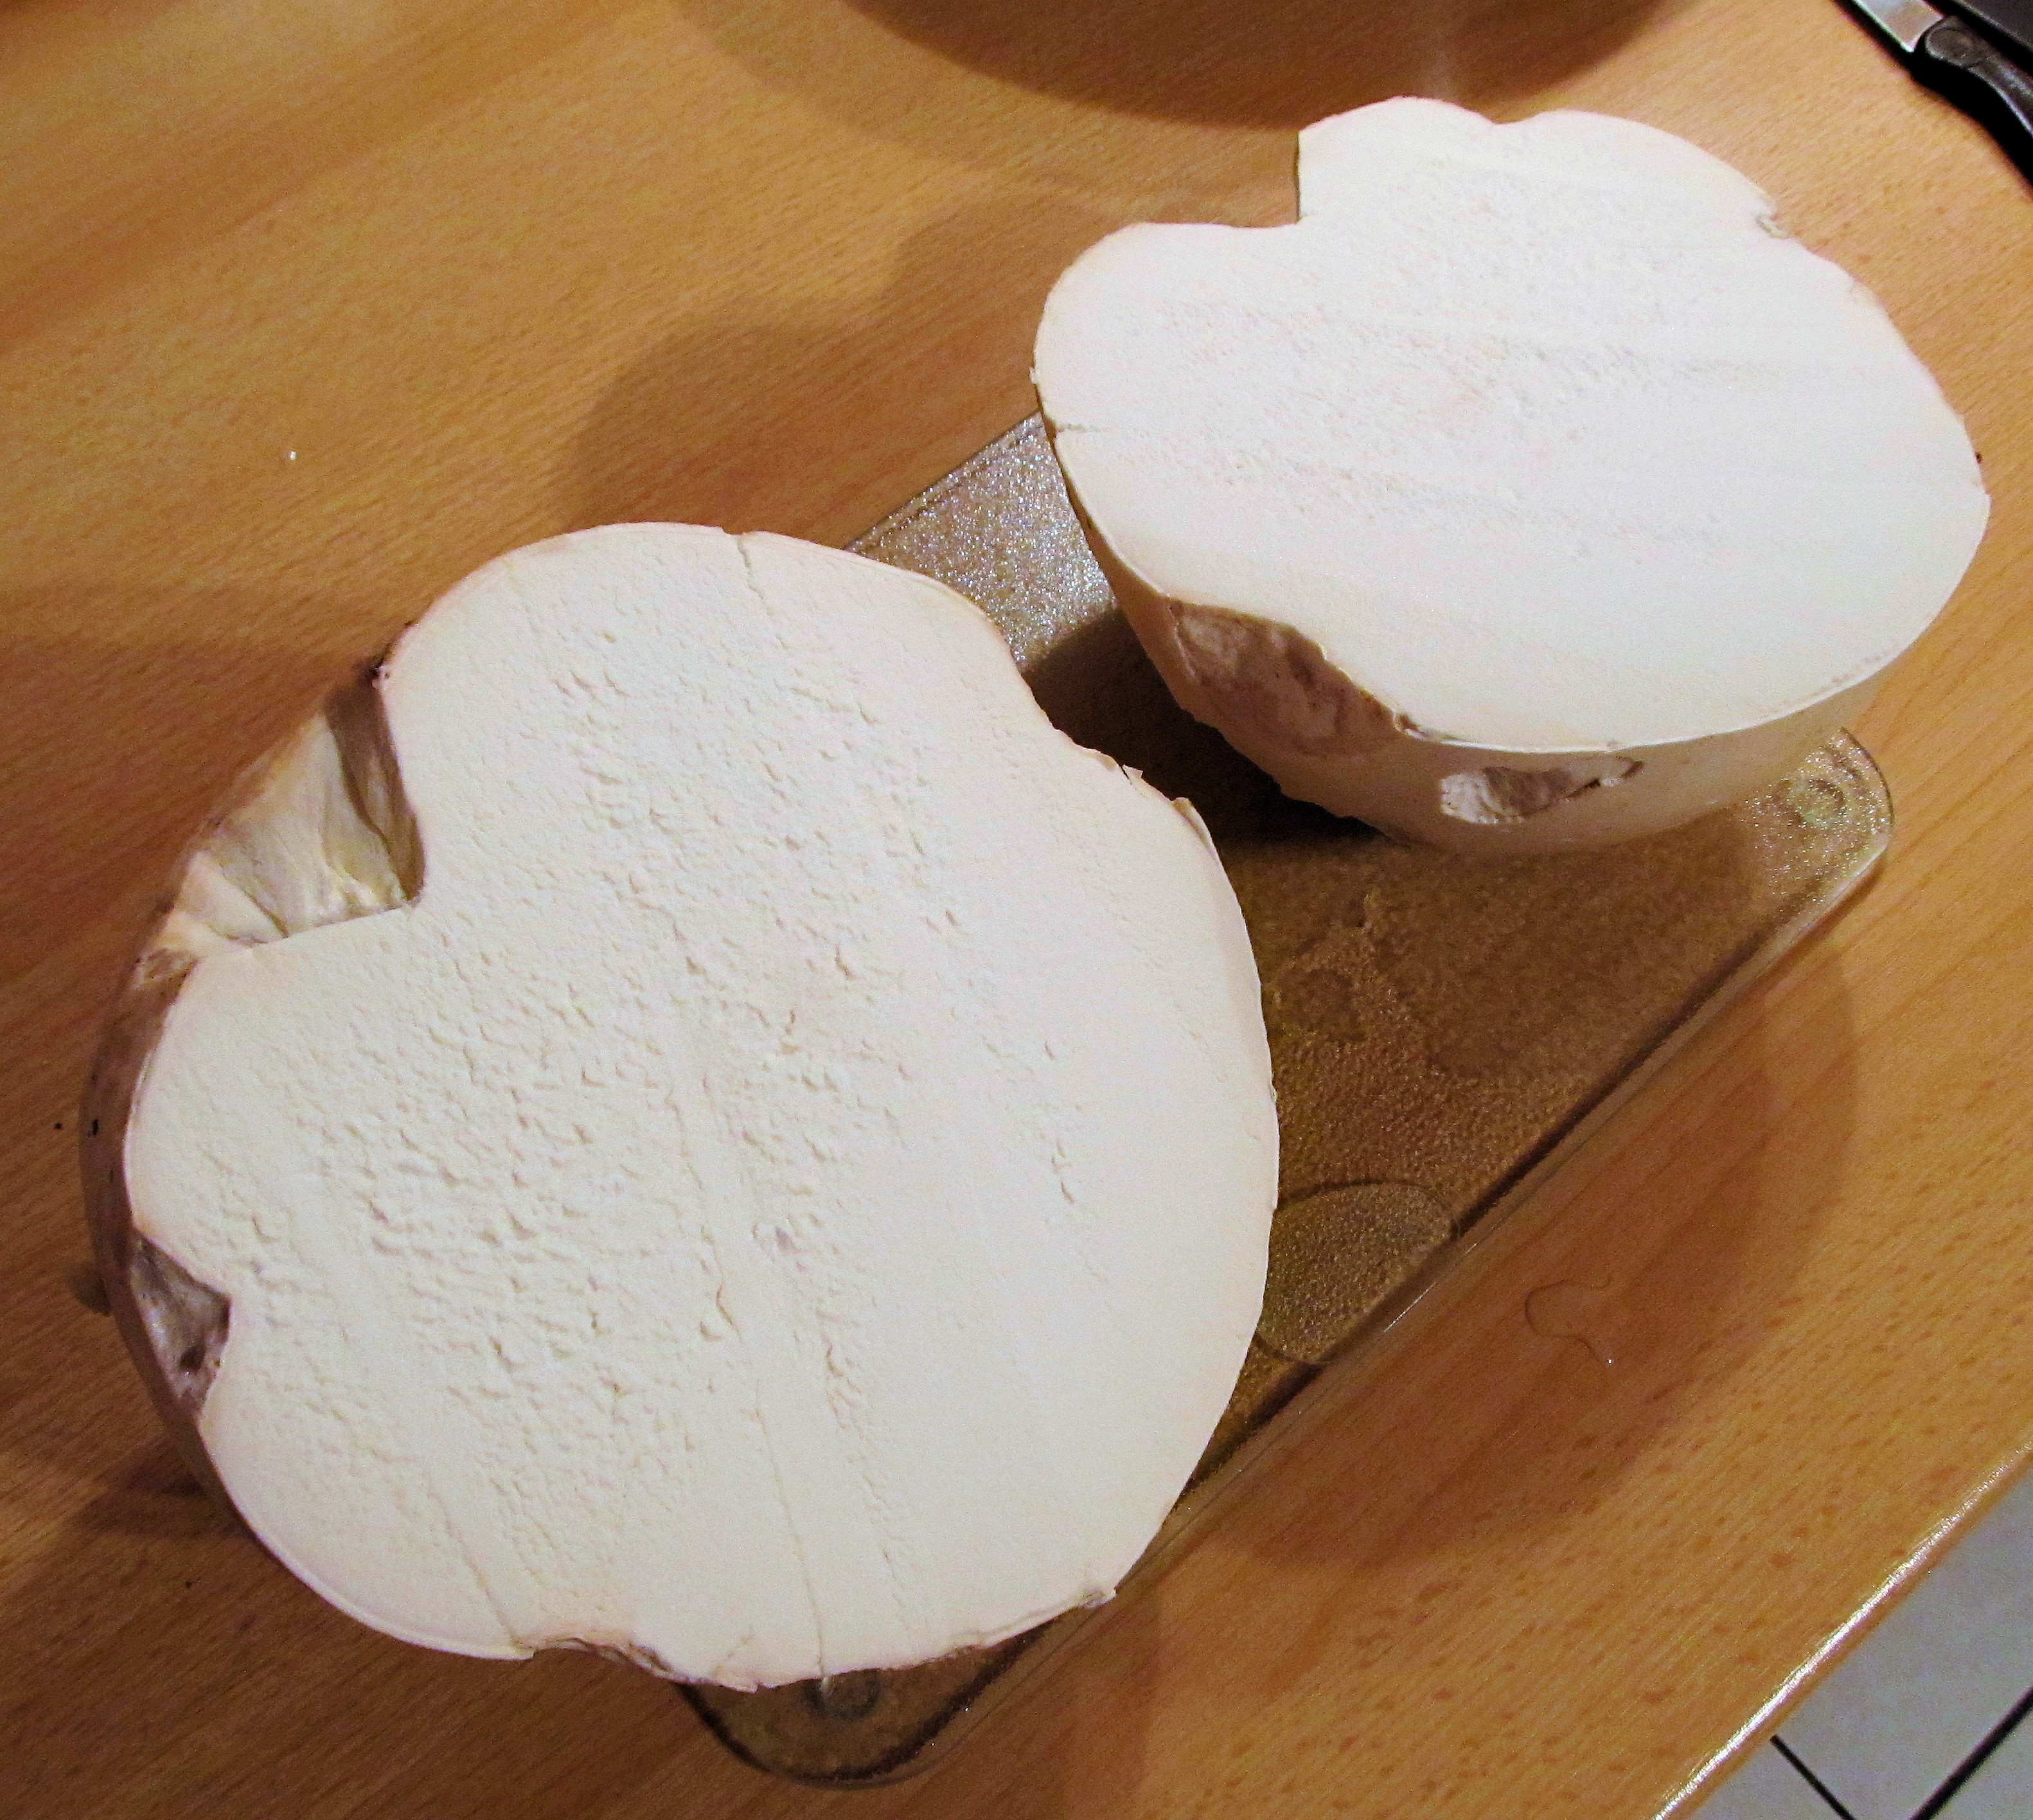 Riesenbovist (Calvatia gigantea) - Querschnitt. Solange der Fruchtkörper noch so weiß ist, sehr schmackhaft - hms(1)